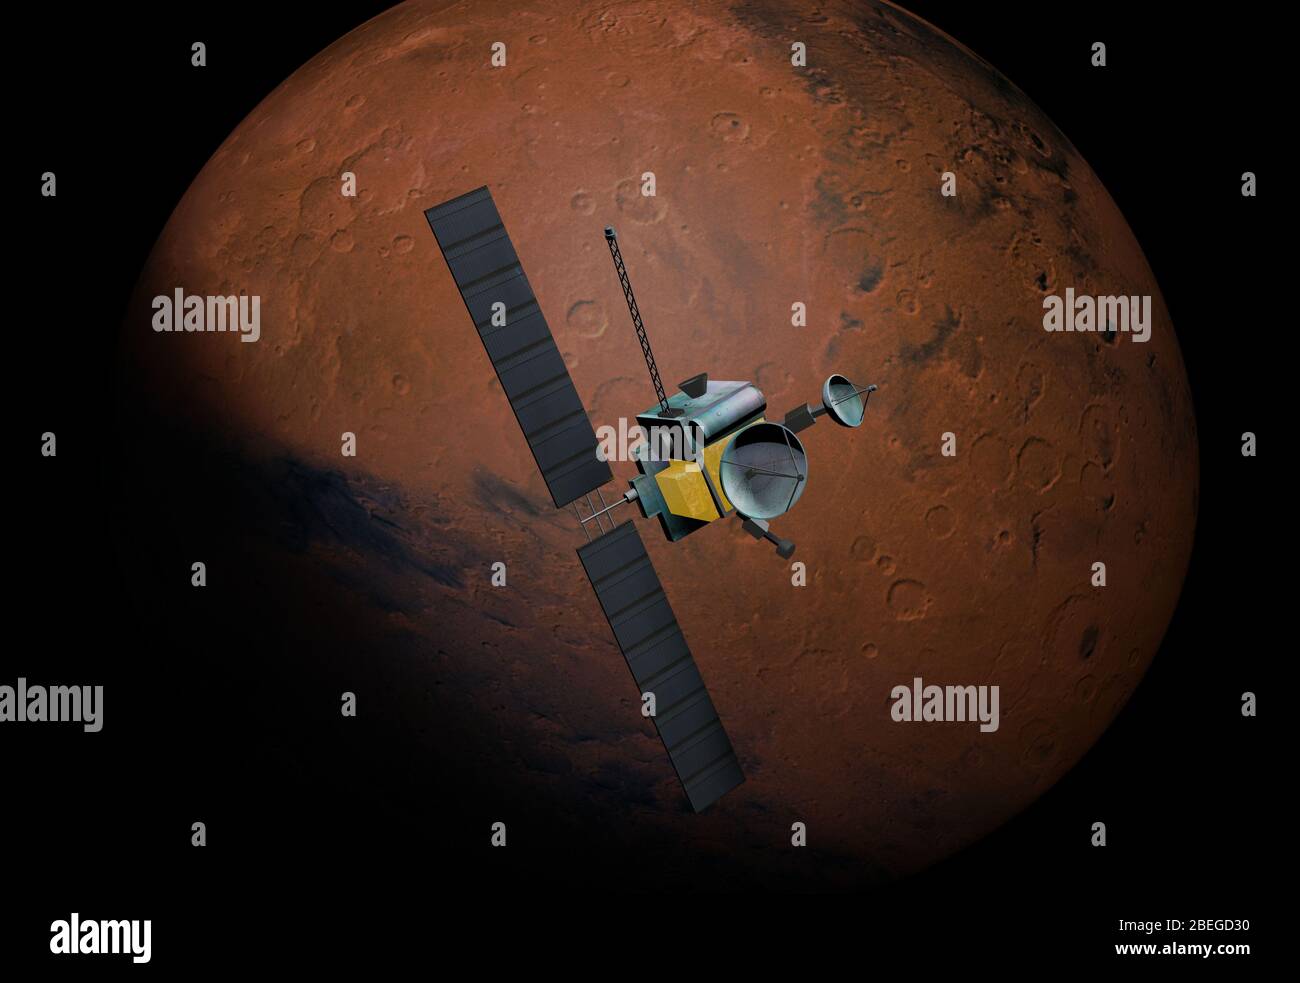 Mars Probe, Illustration Stock Photo